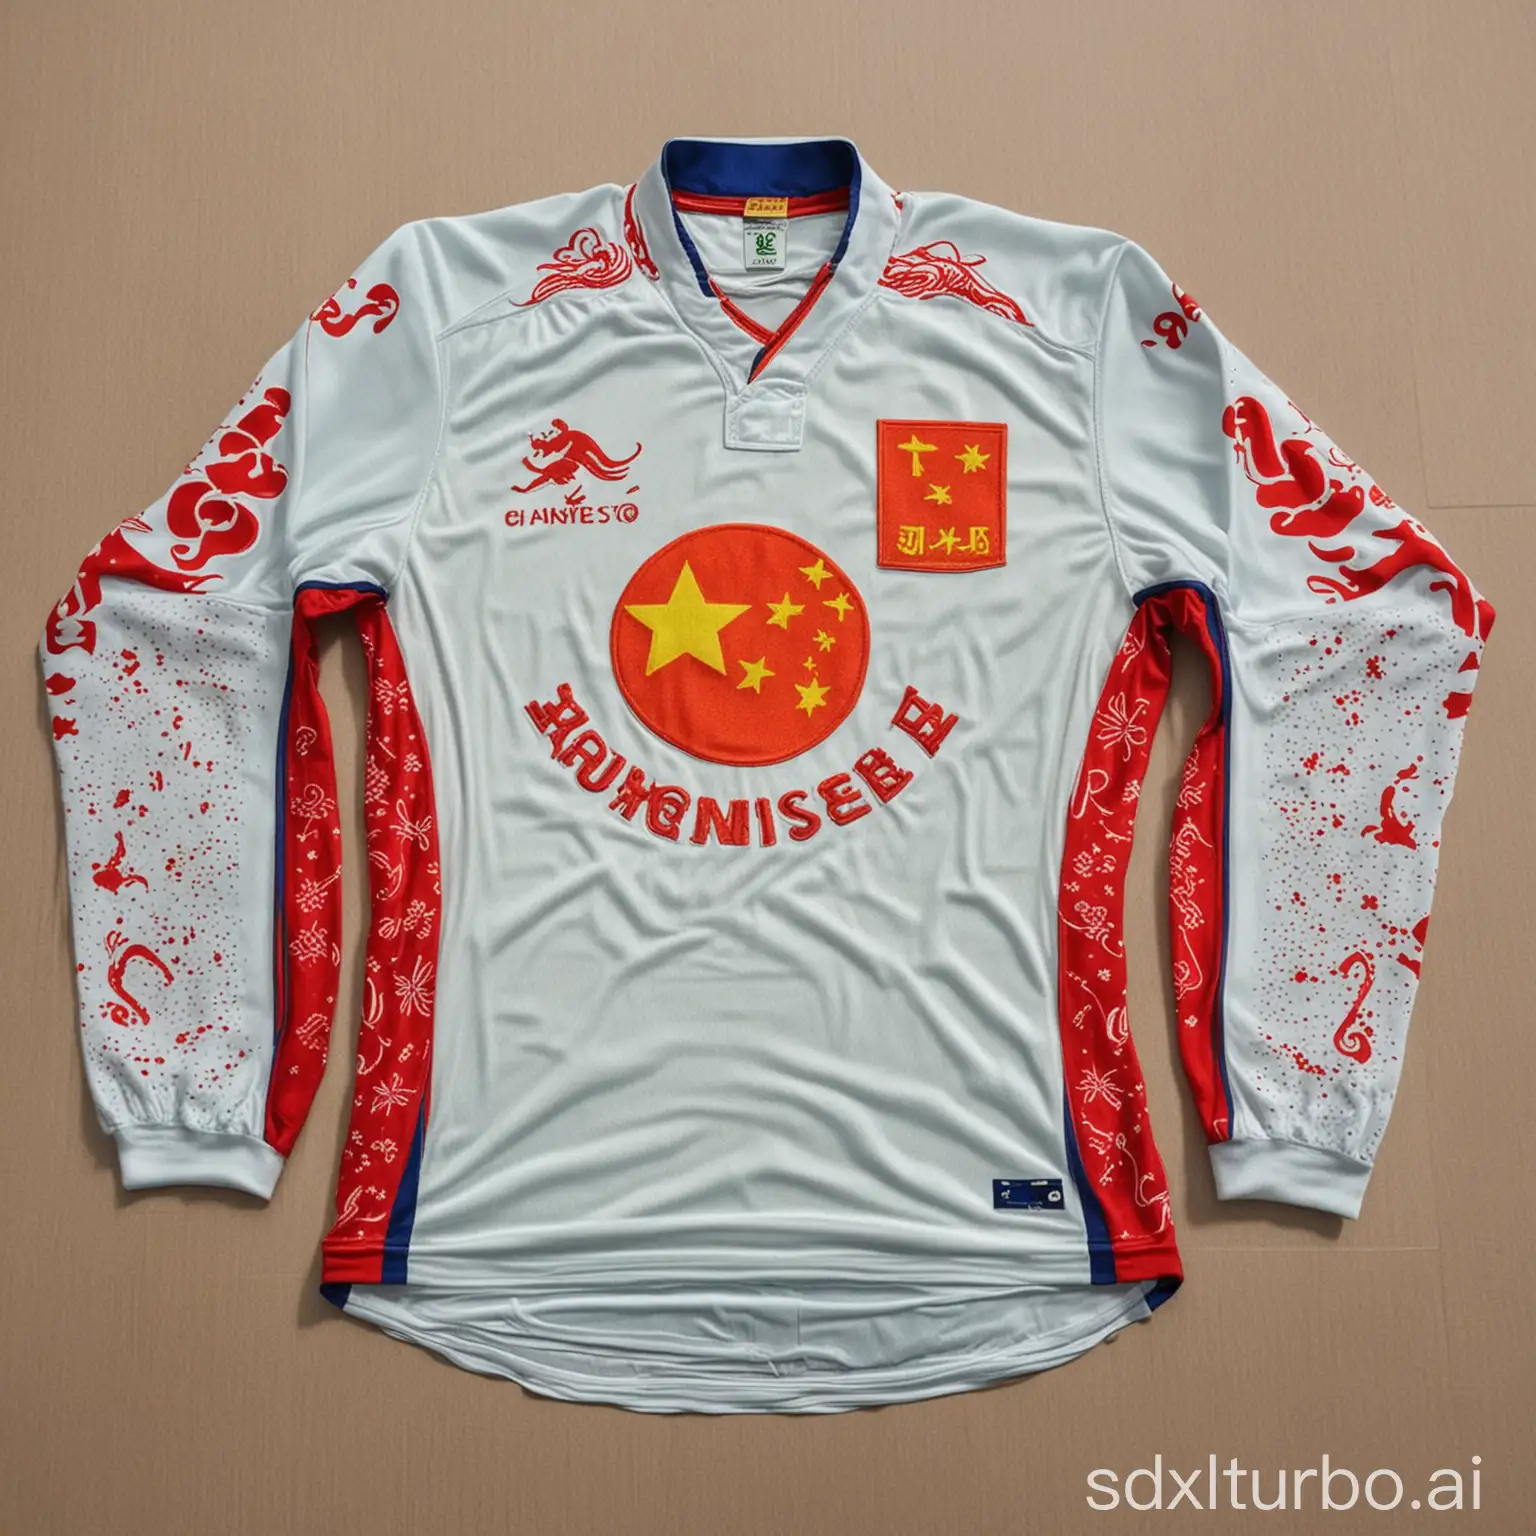 A Chinese jersey